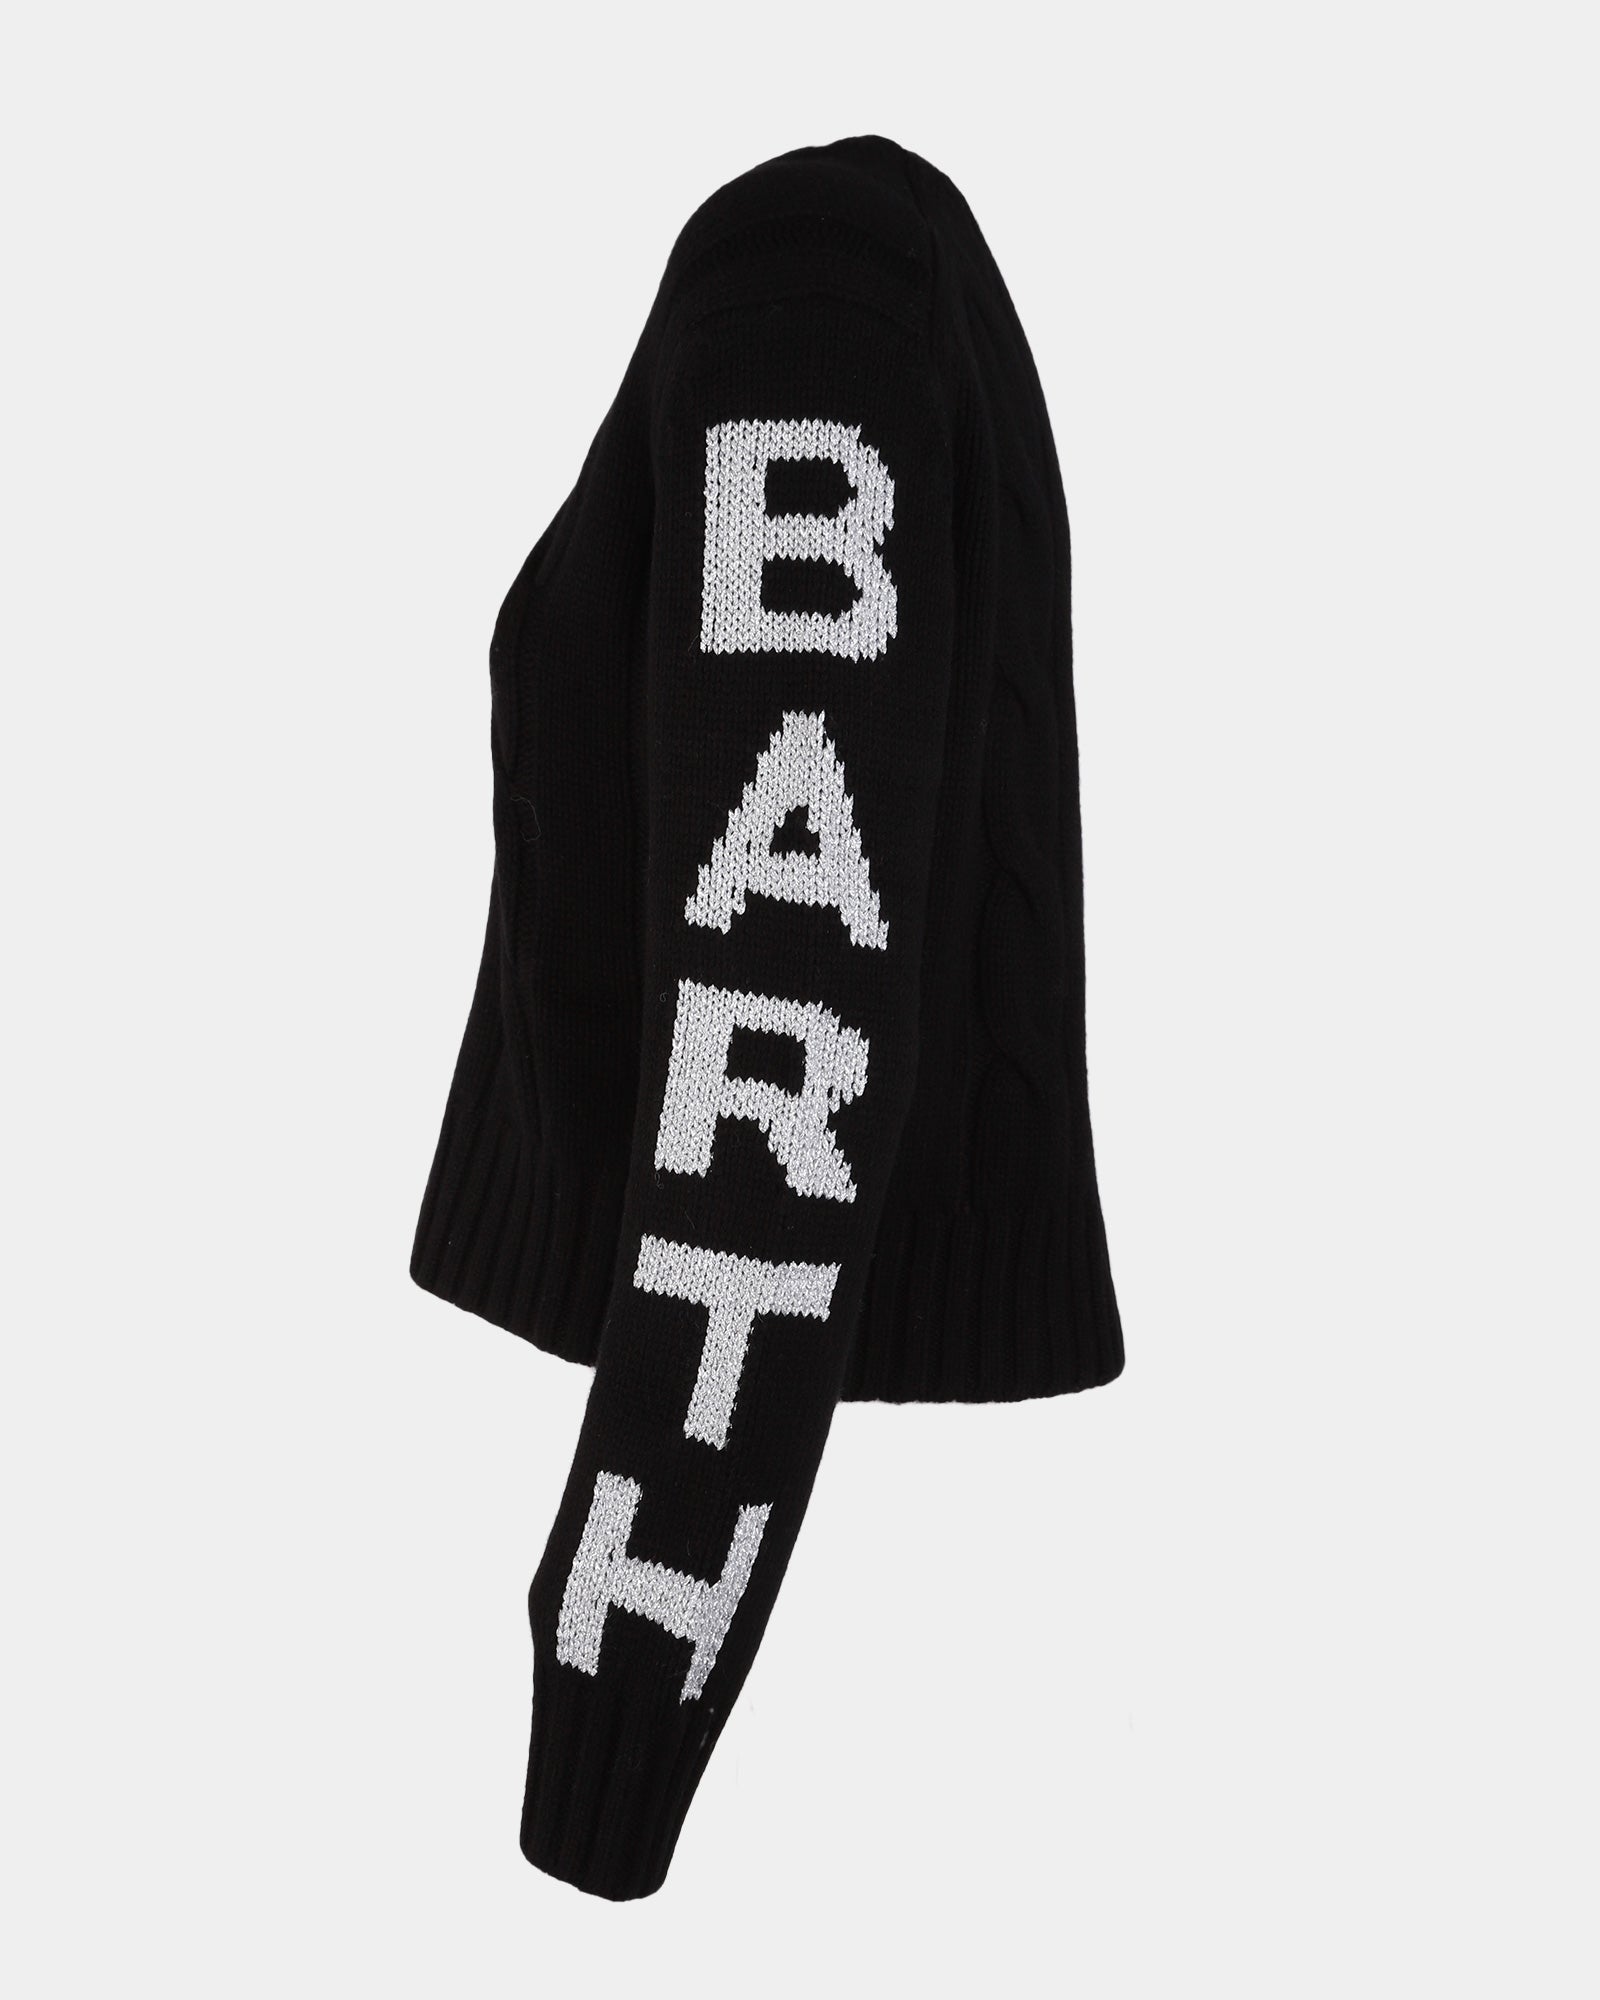 Sainth Barth Black